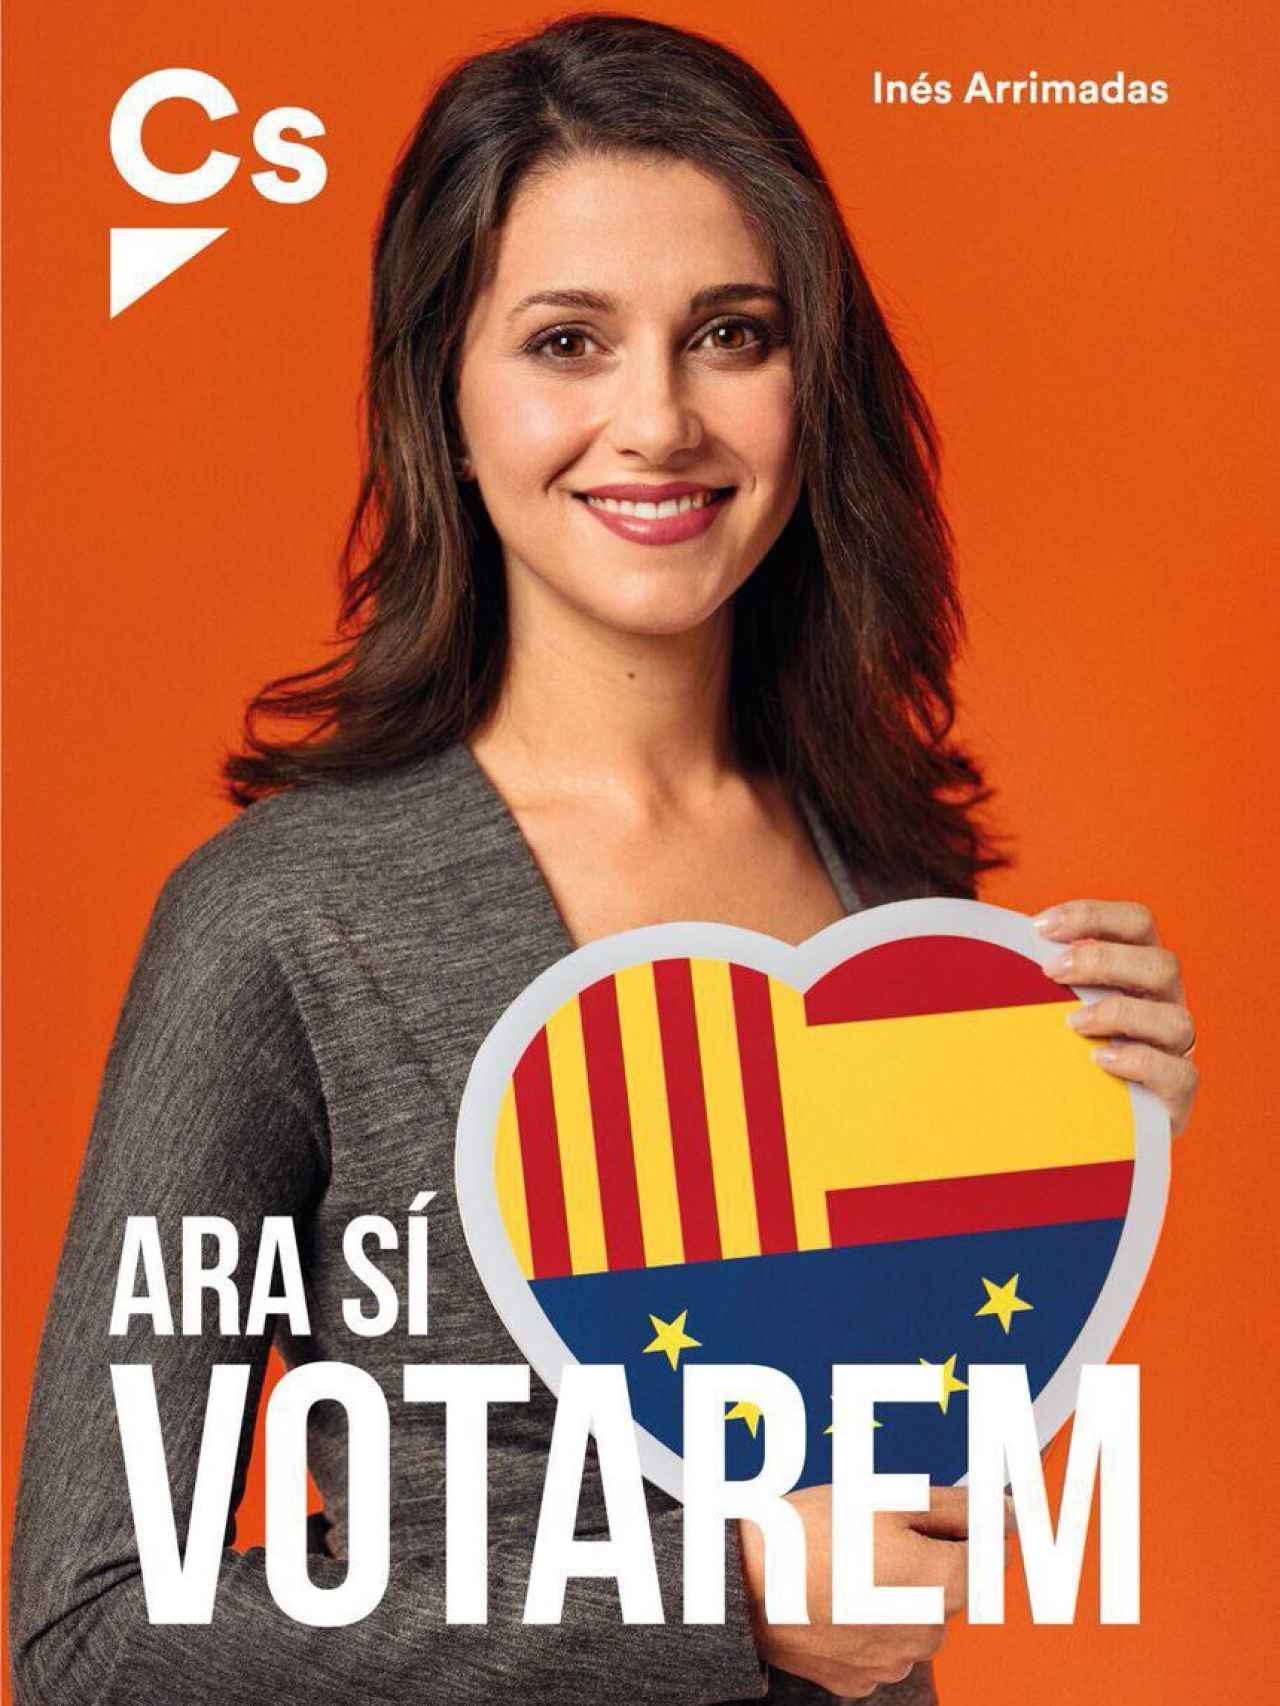 Cartel electoral de Ciudadanos